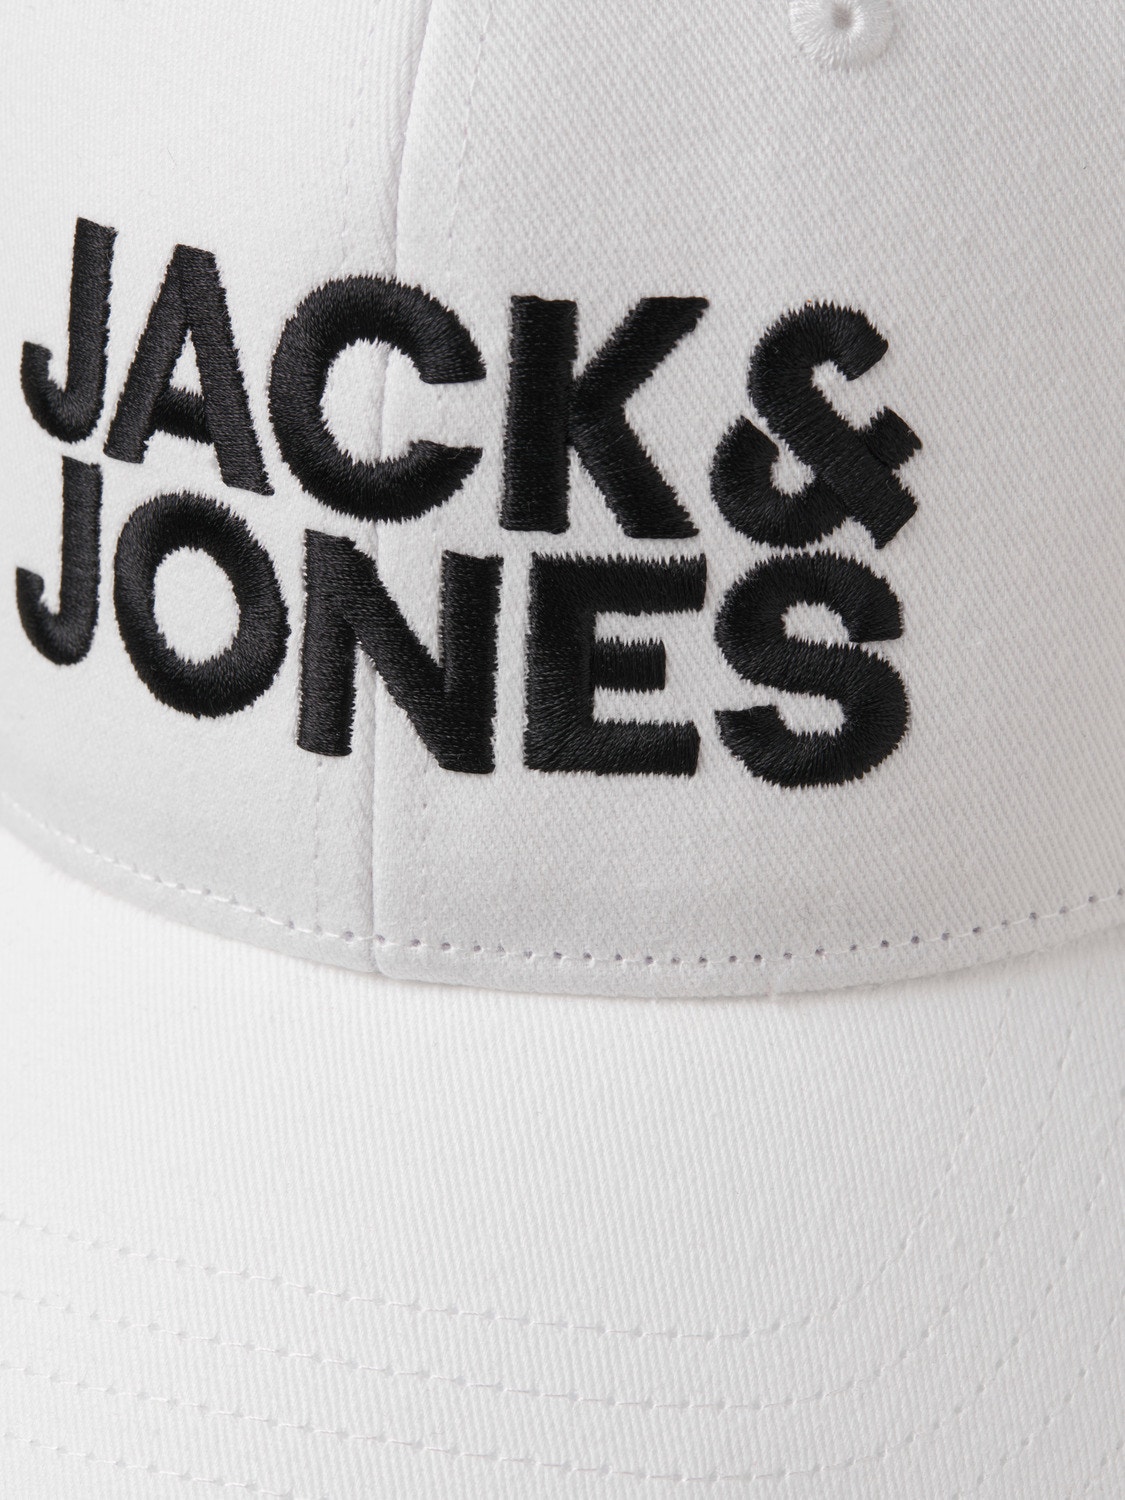 Jack & Jones Baseball cap -White - 12254296